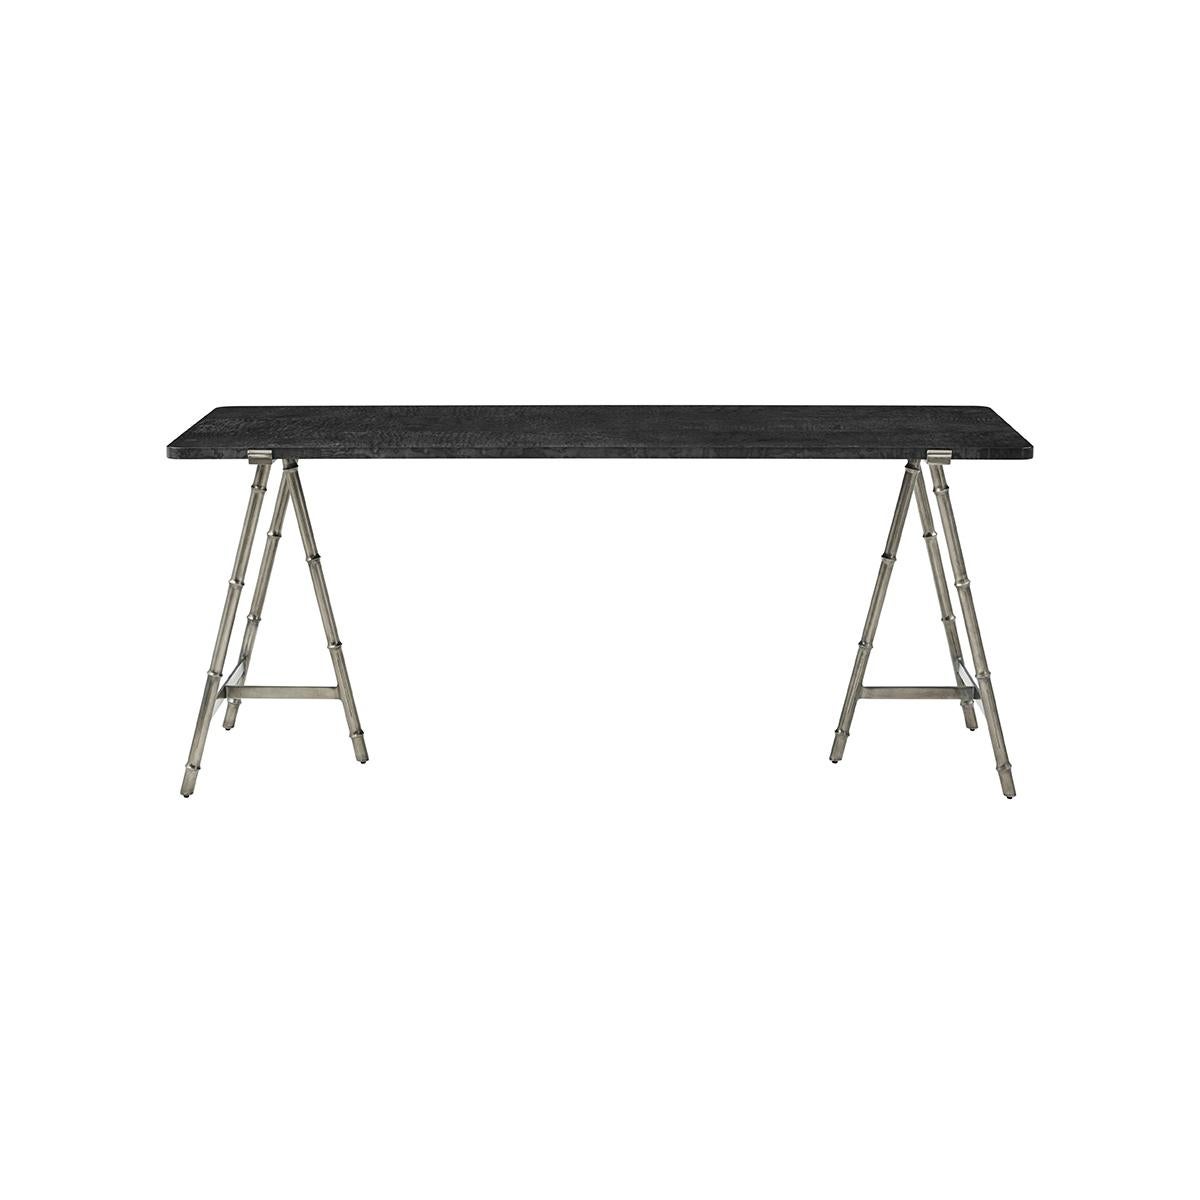 Des lignes élancées forment un design léger et aérien dans cette table moderne. Une combinaison gracieuse de bois de ronce dans une finition polie noire silencieuse au sommet d'une base organique en faux bois dans une finition bronze